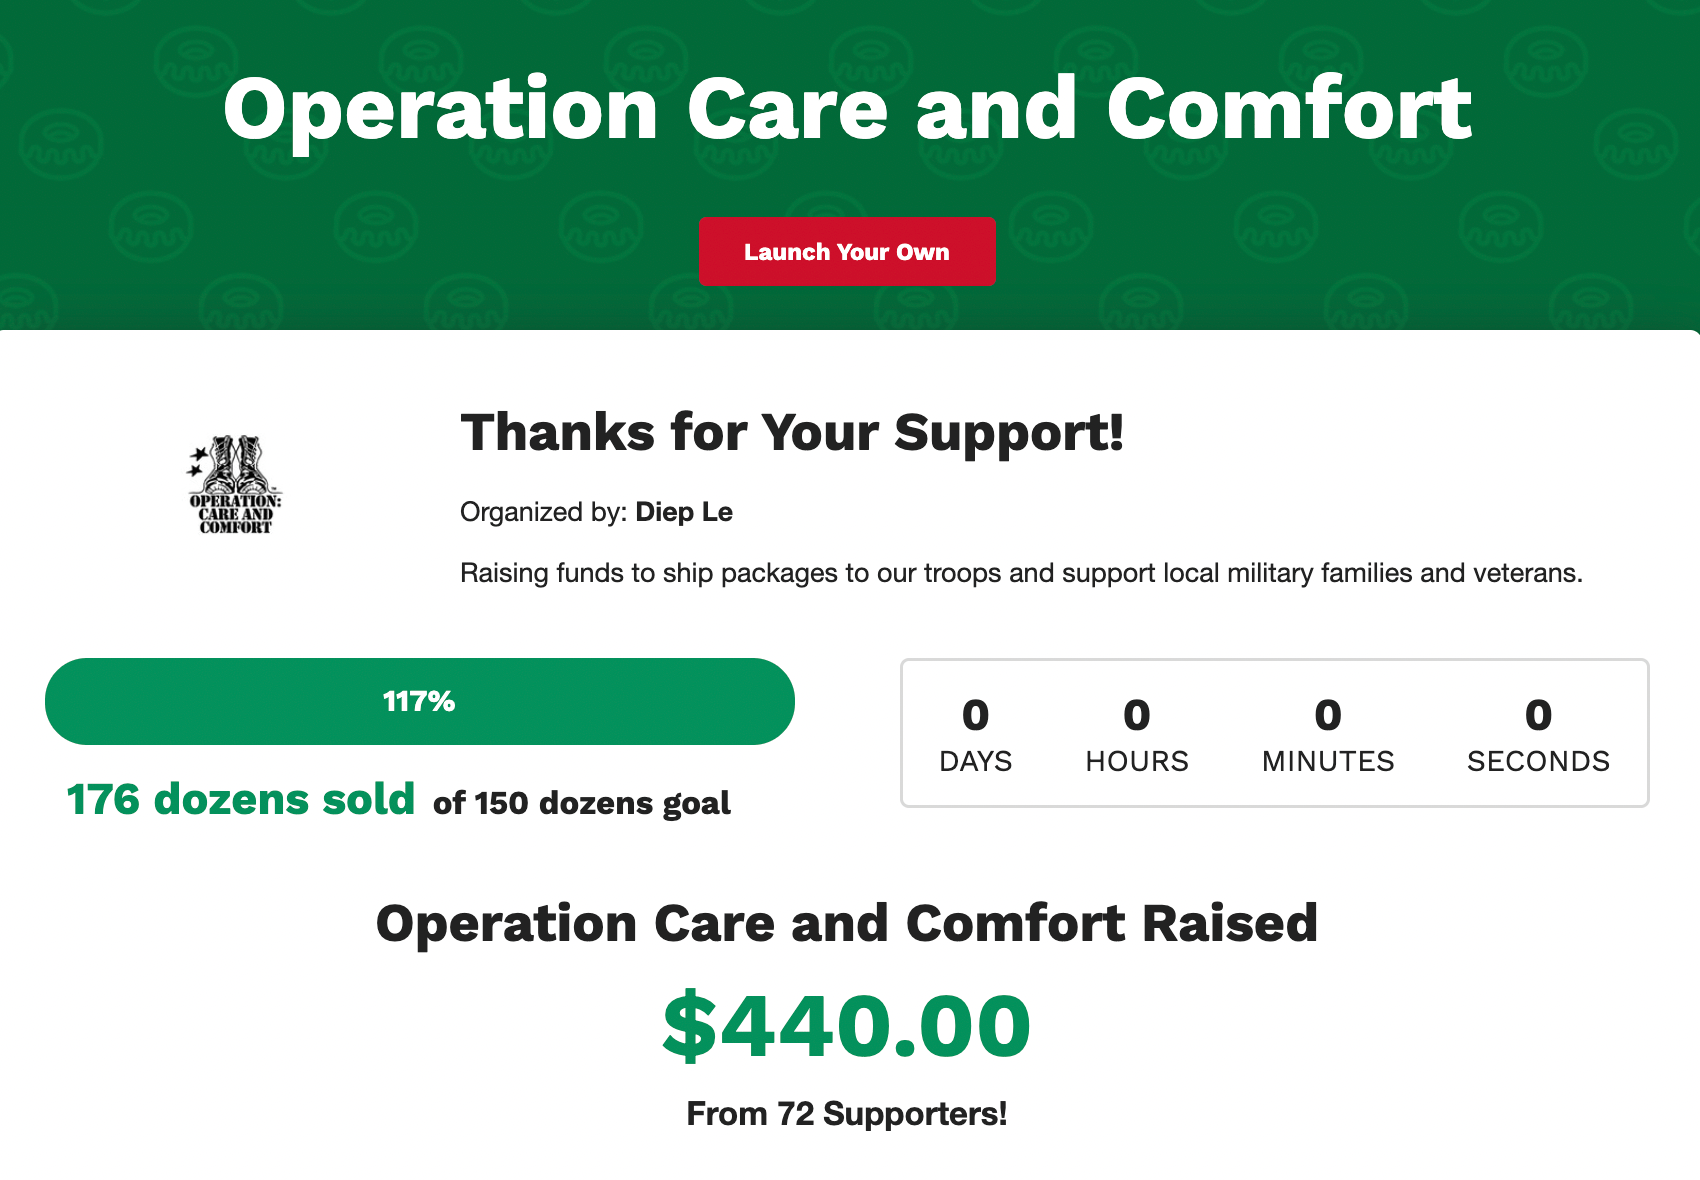 หน้าแคมเปญการระดมทุนดิจิทัลหลายสิบรายการของ Operation Care and Comfort